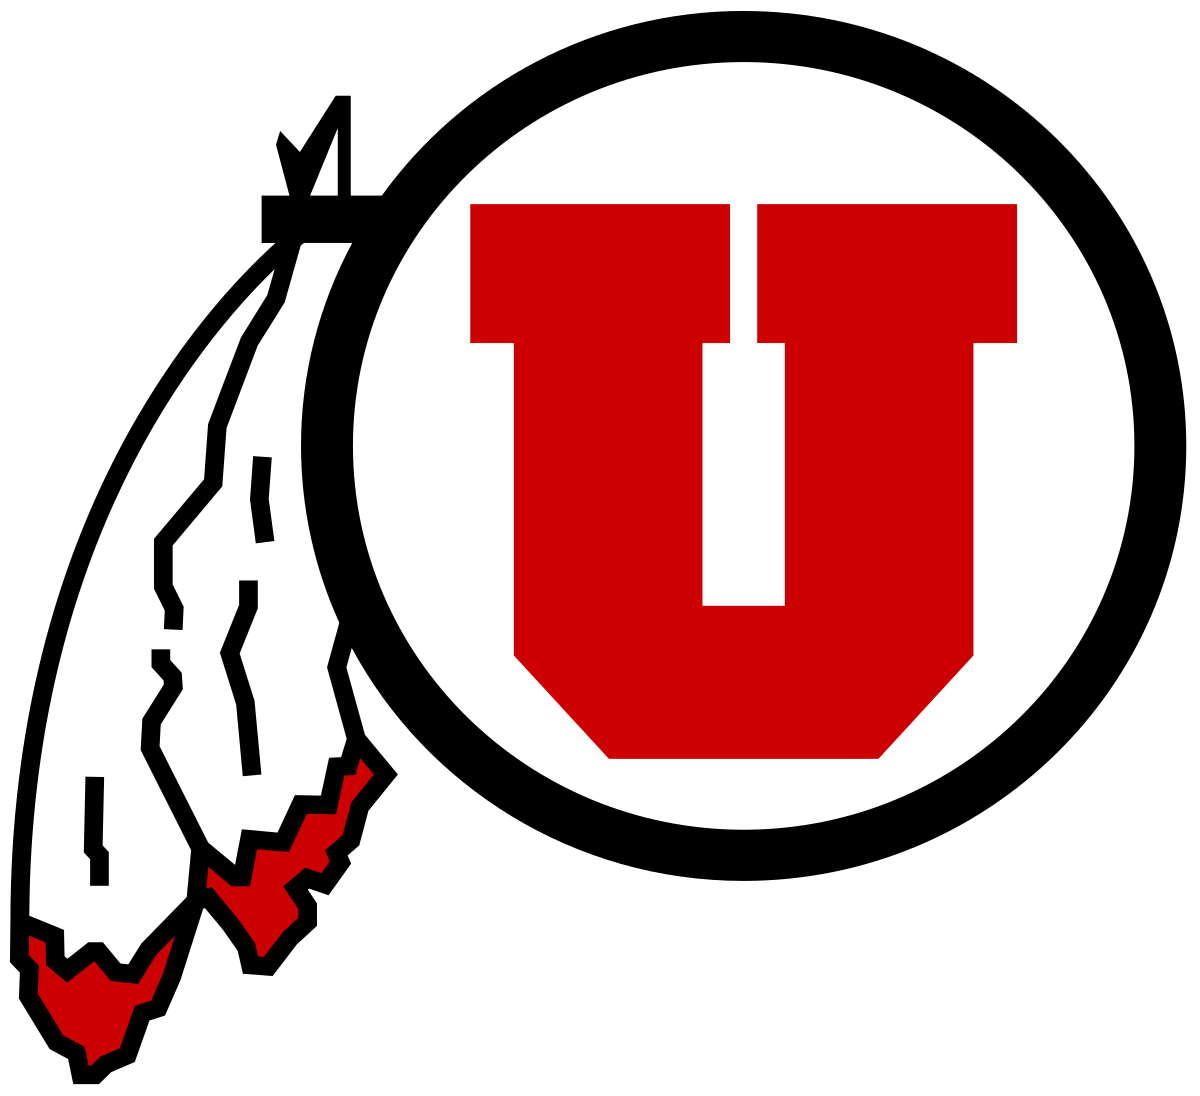 University of Utah Football Logo - Utah Utes